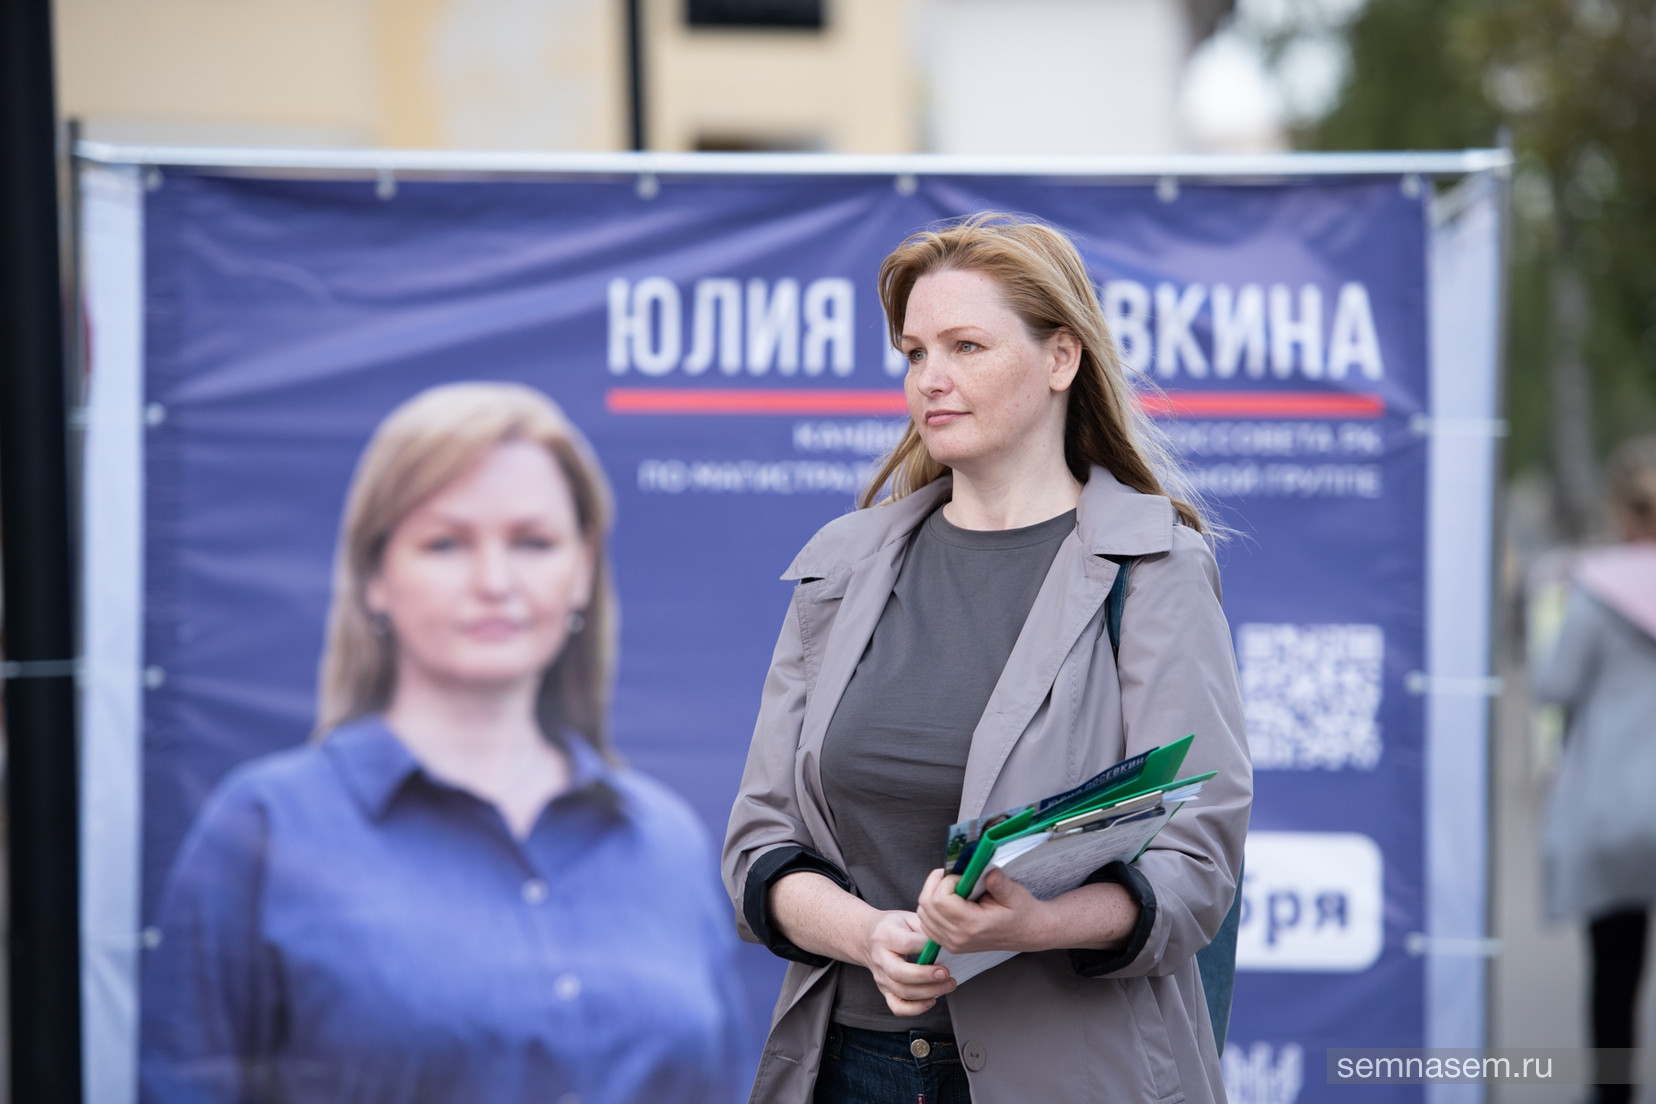 Активистку из Коми оштрафовали за организацию акций в поддержку Навального. В это время она лежала дома с переломом ноги